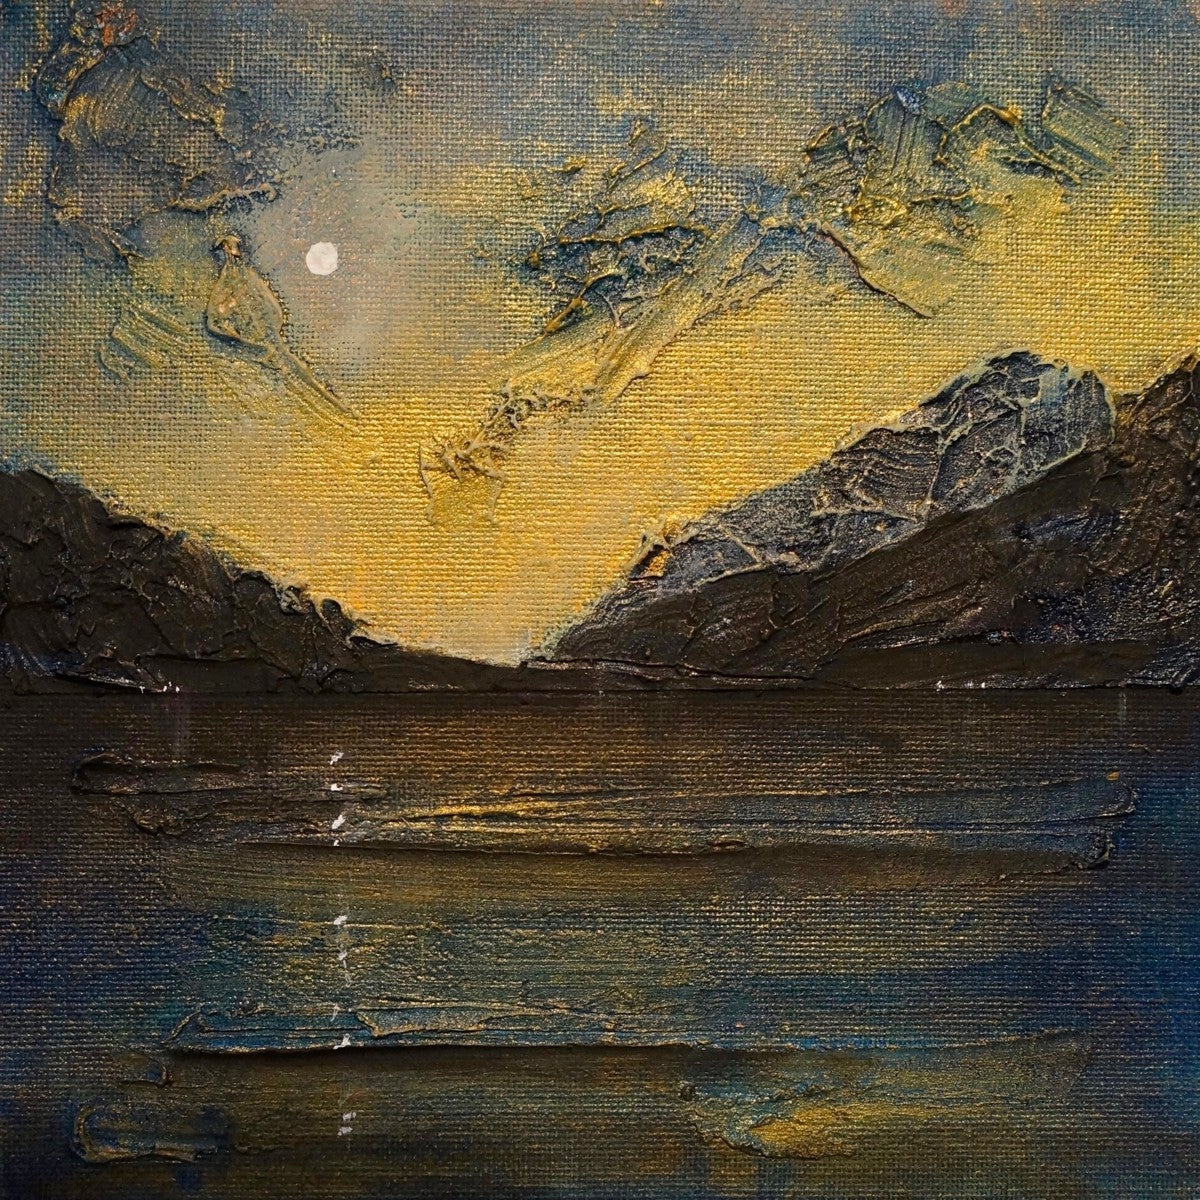 Loch Lomond Moonlight Art Gifts From Scotland